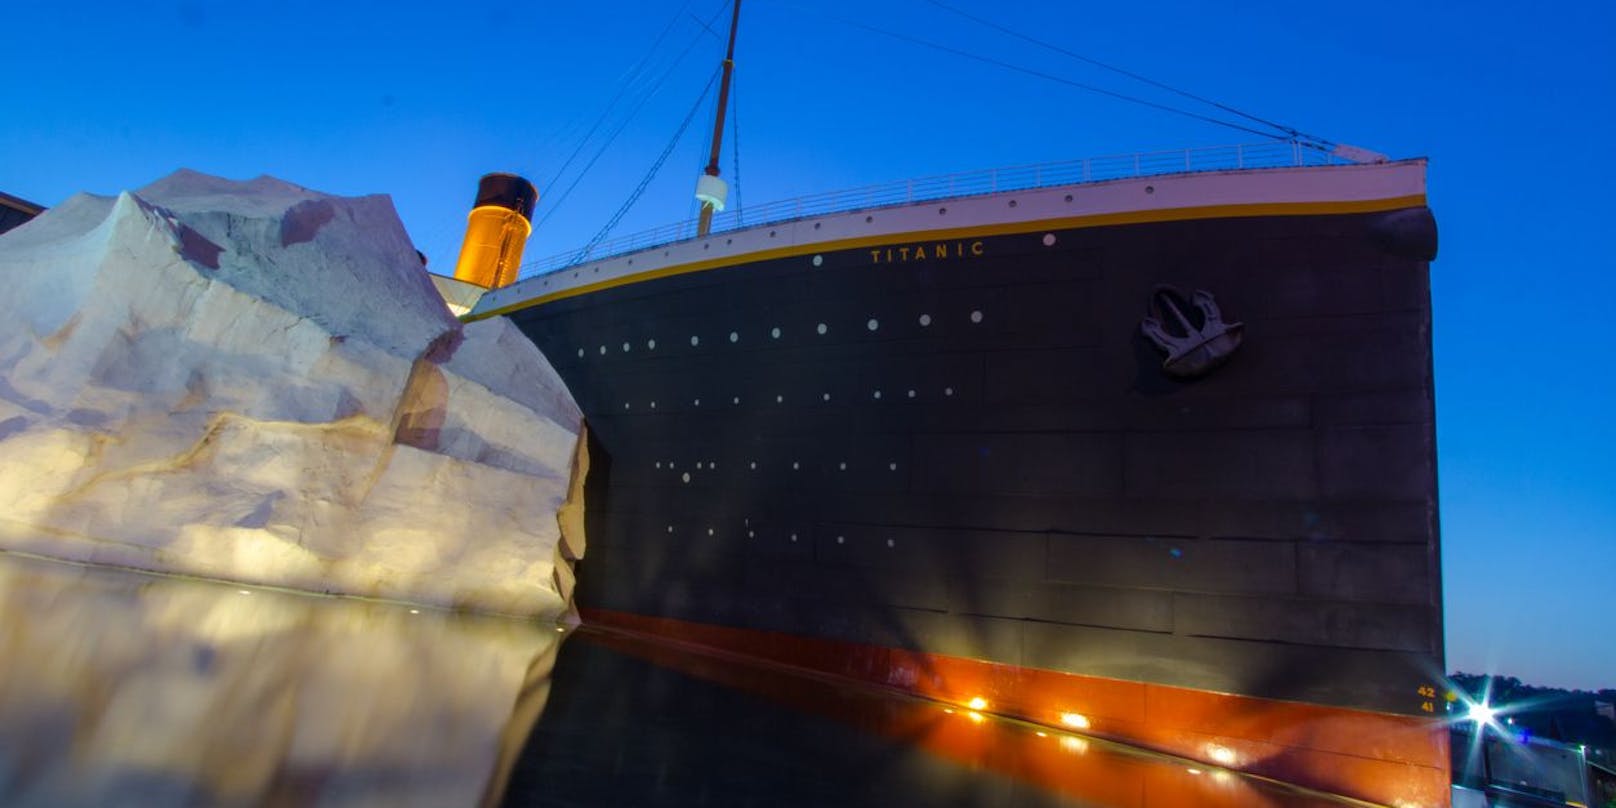 Besagte Eisberg-Installation im Titanic-Museum in Pigeon Forge, Tennessee, USA